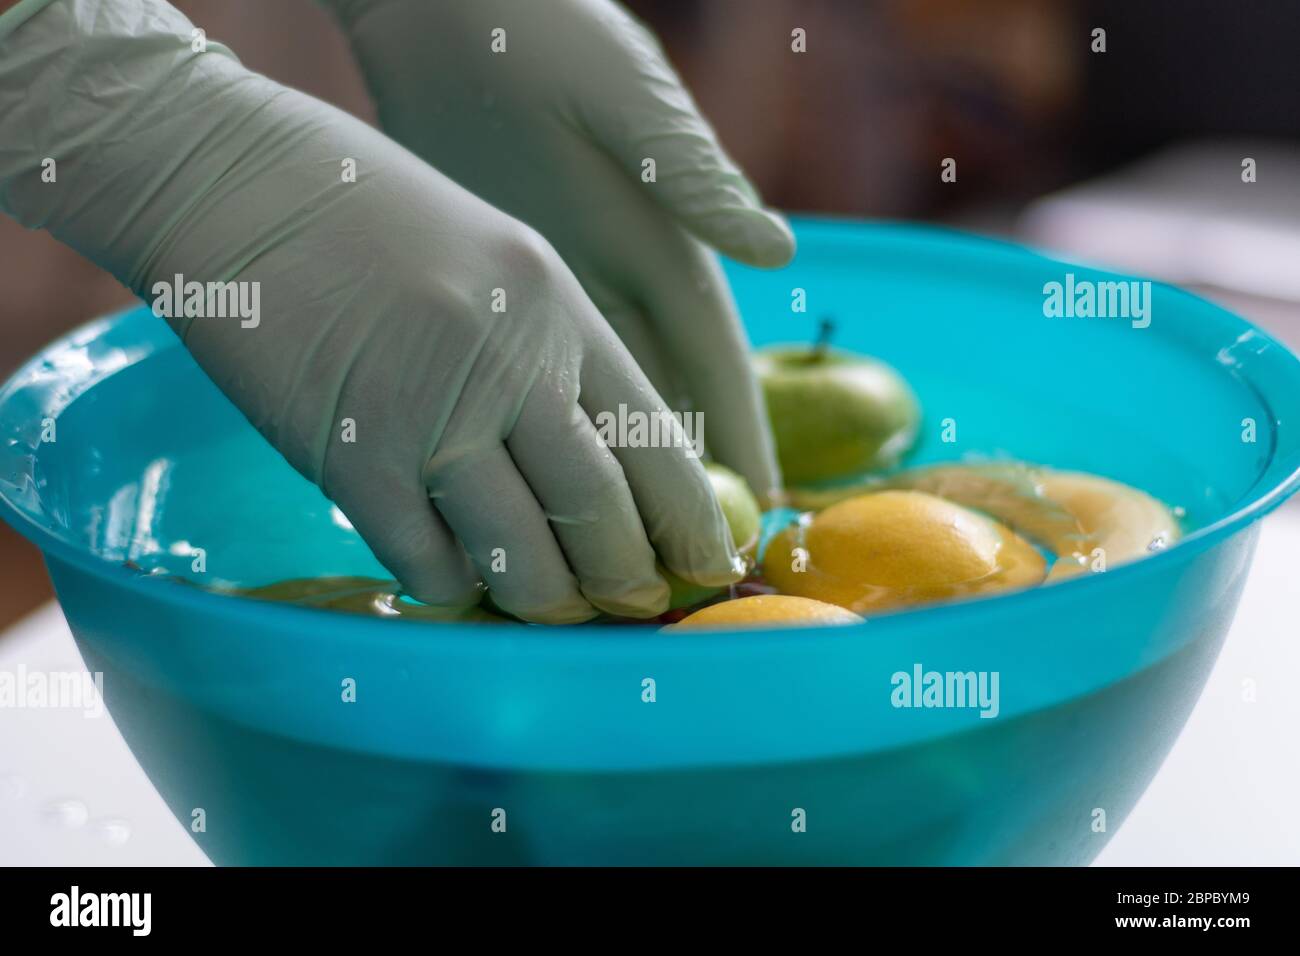 Lavar las frutas en un recipiente con guantes de plástico. Las frutas se colocan en el agua en un tazón verde para la limpieza después de las compras. Foto de stock